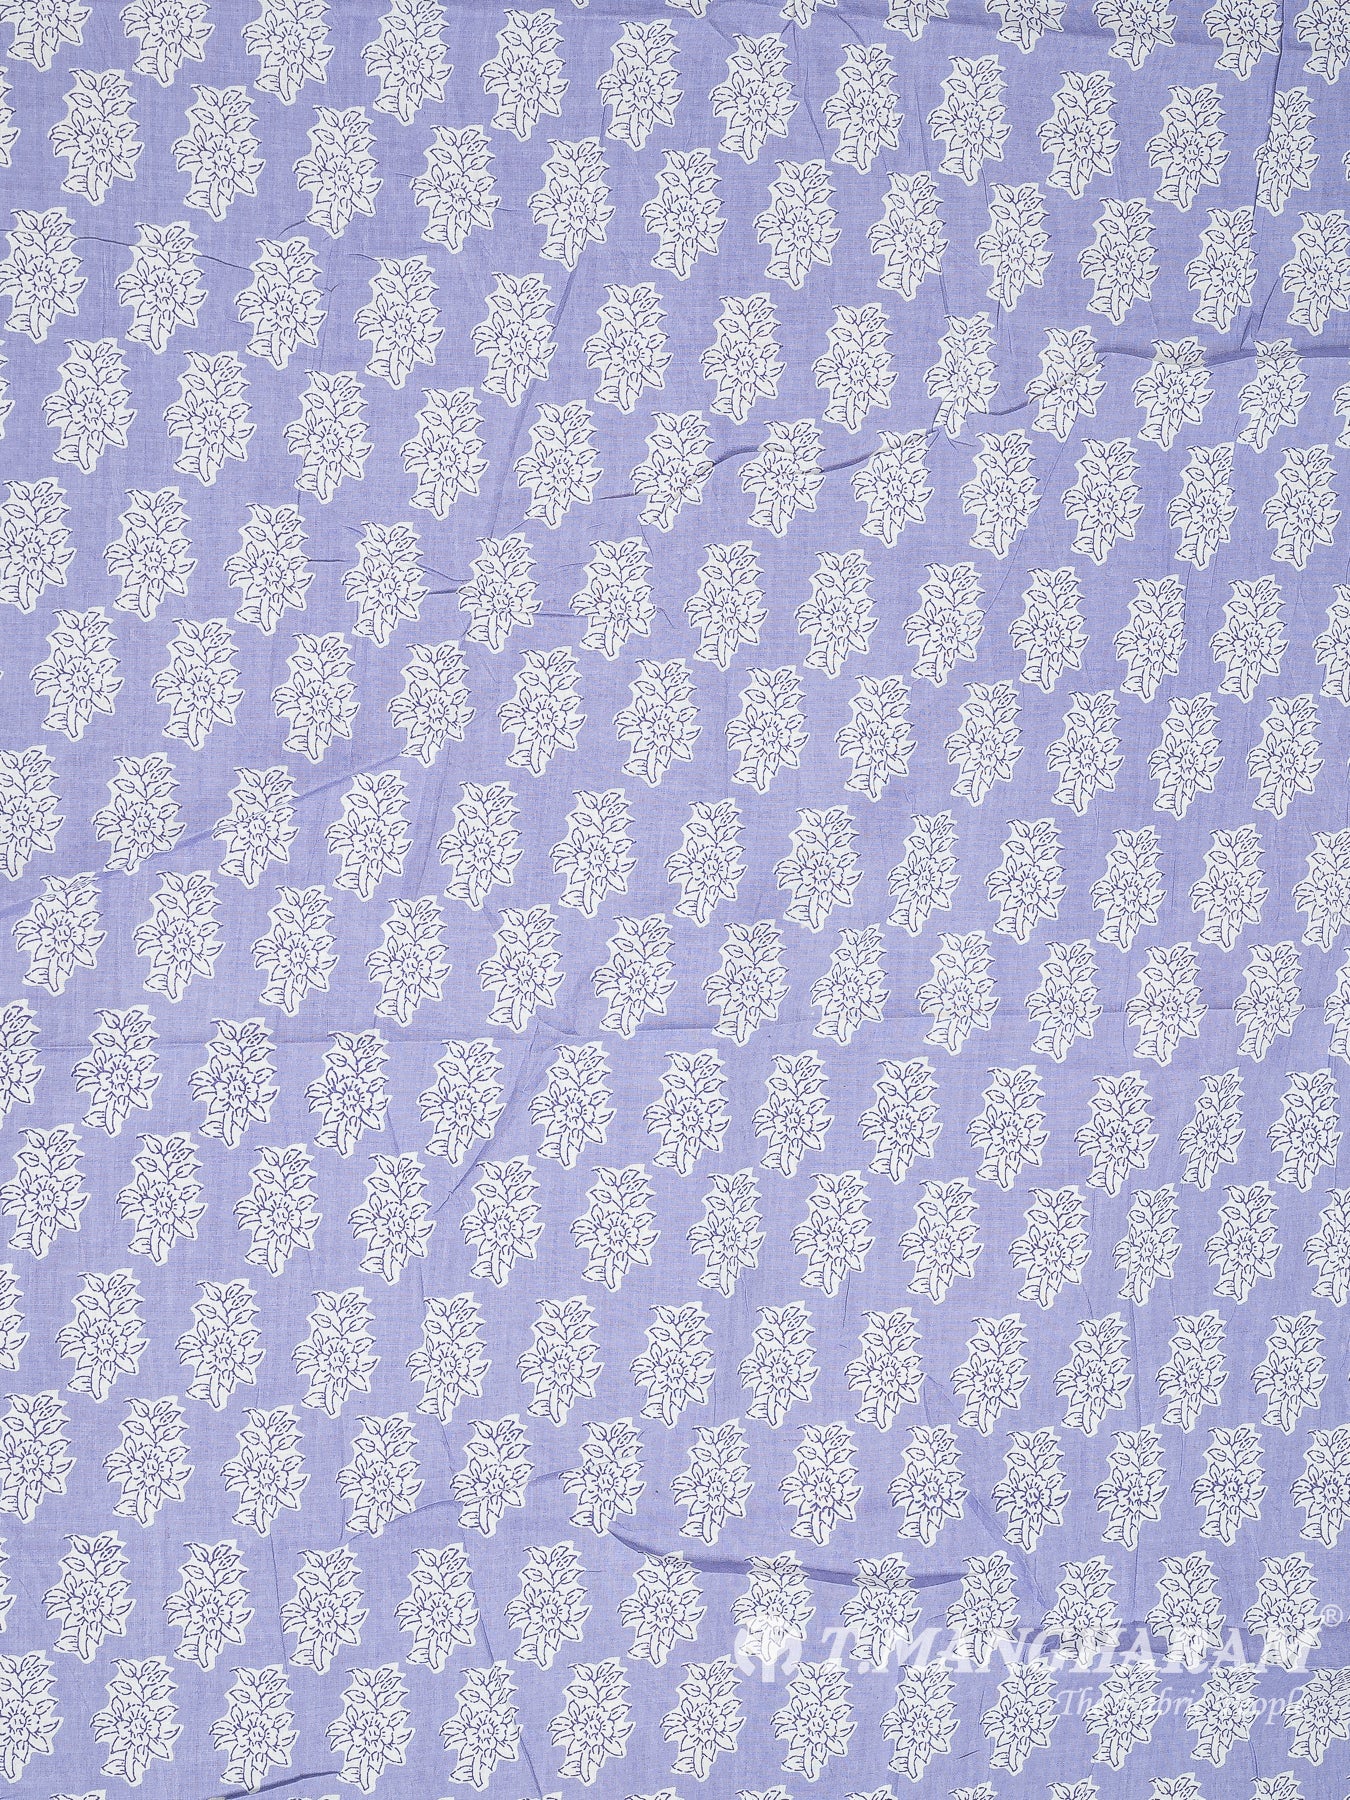 Violet Cotton Fabric - EC8320